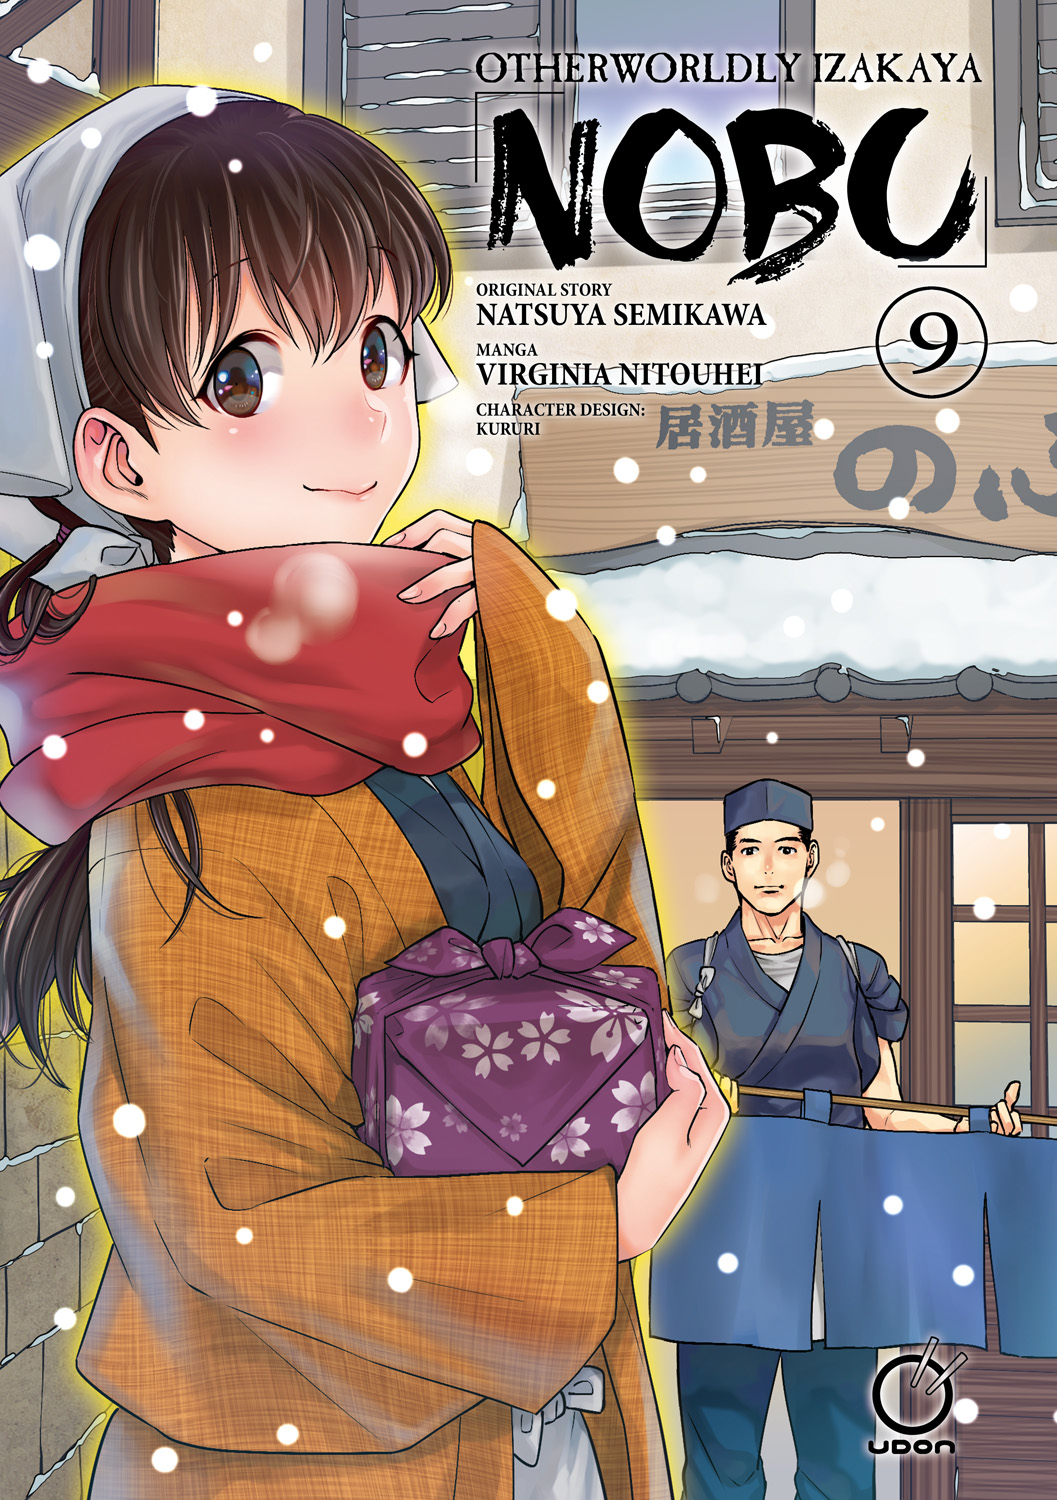 Otherworldly Izakaya Nobu Manga Volume 9